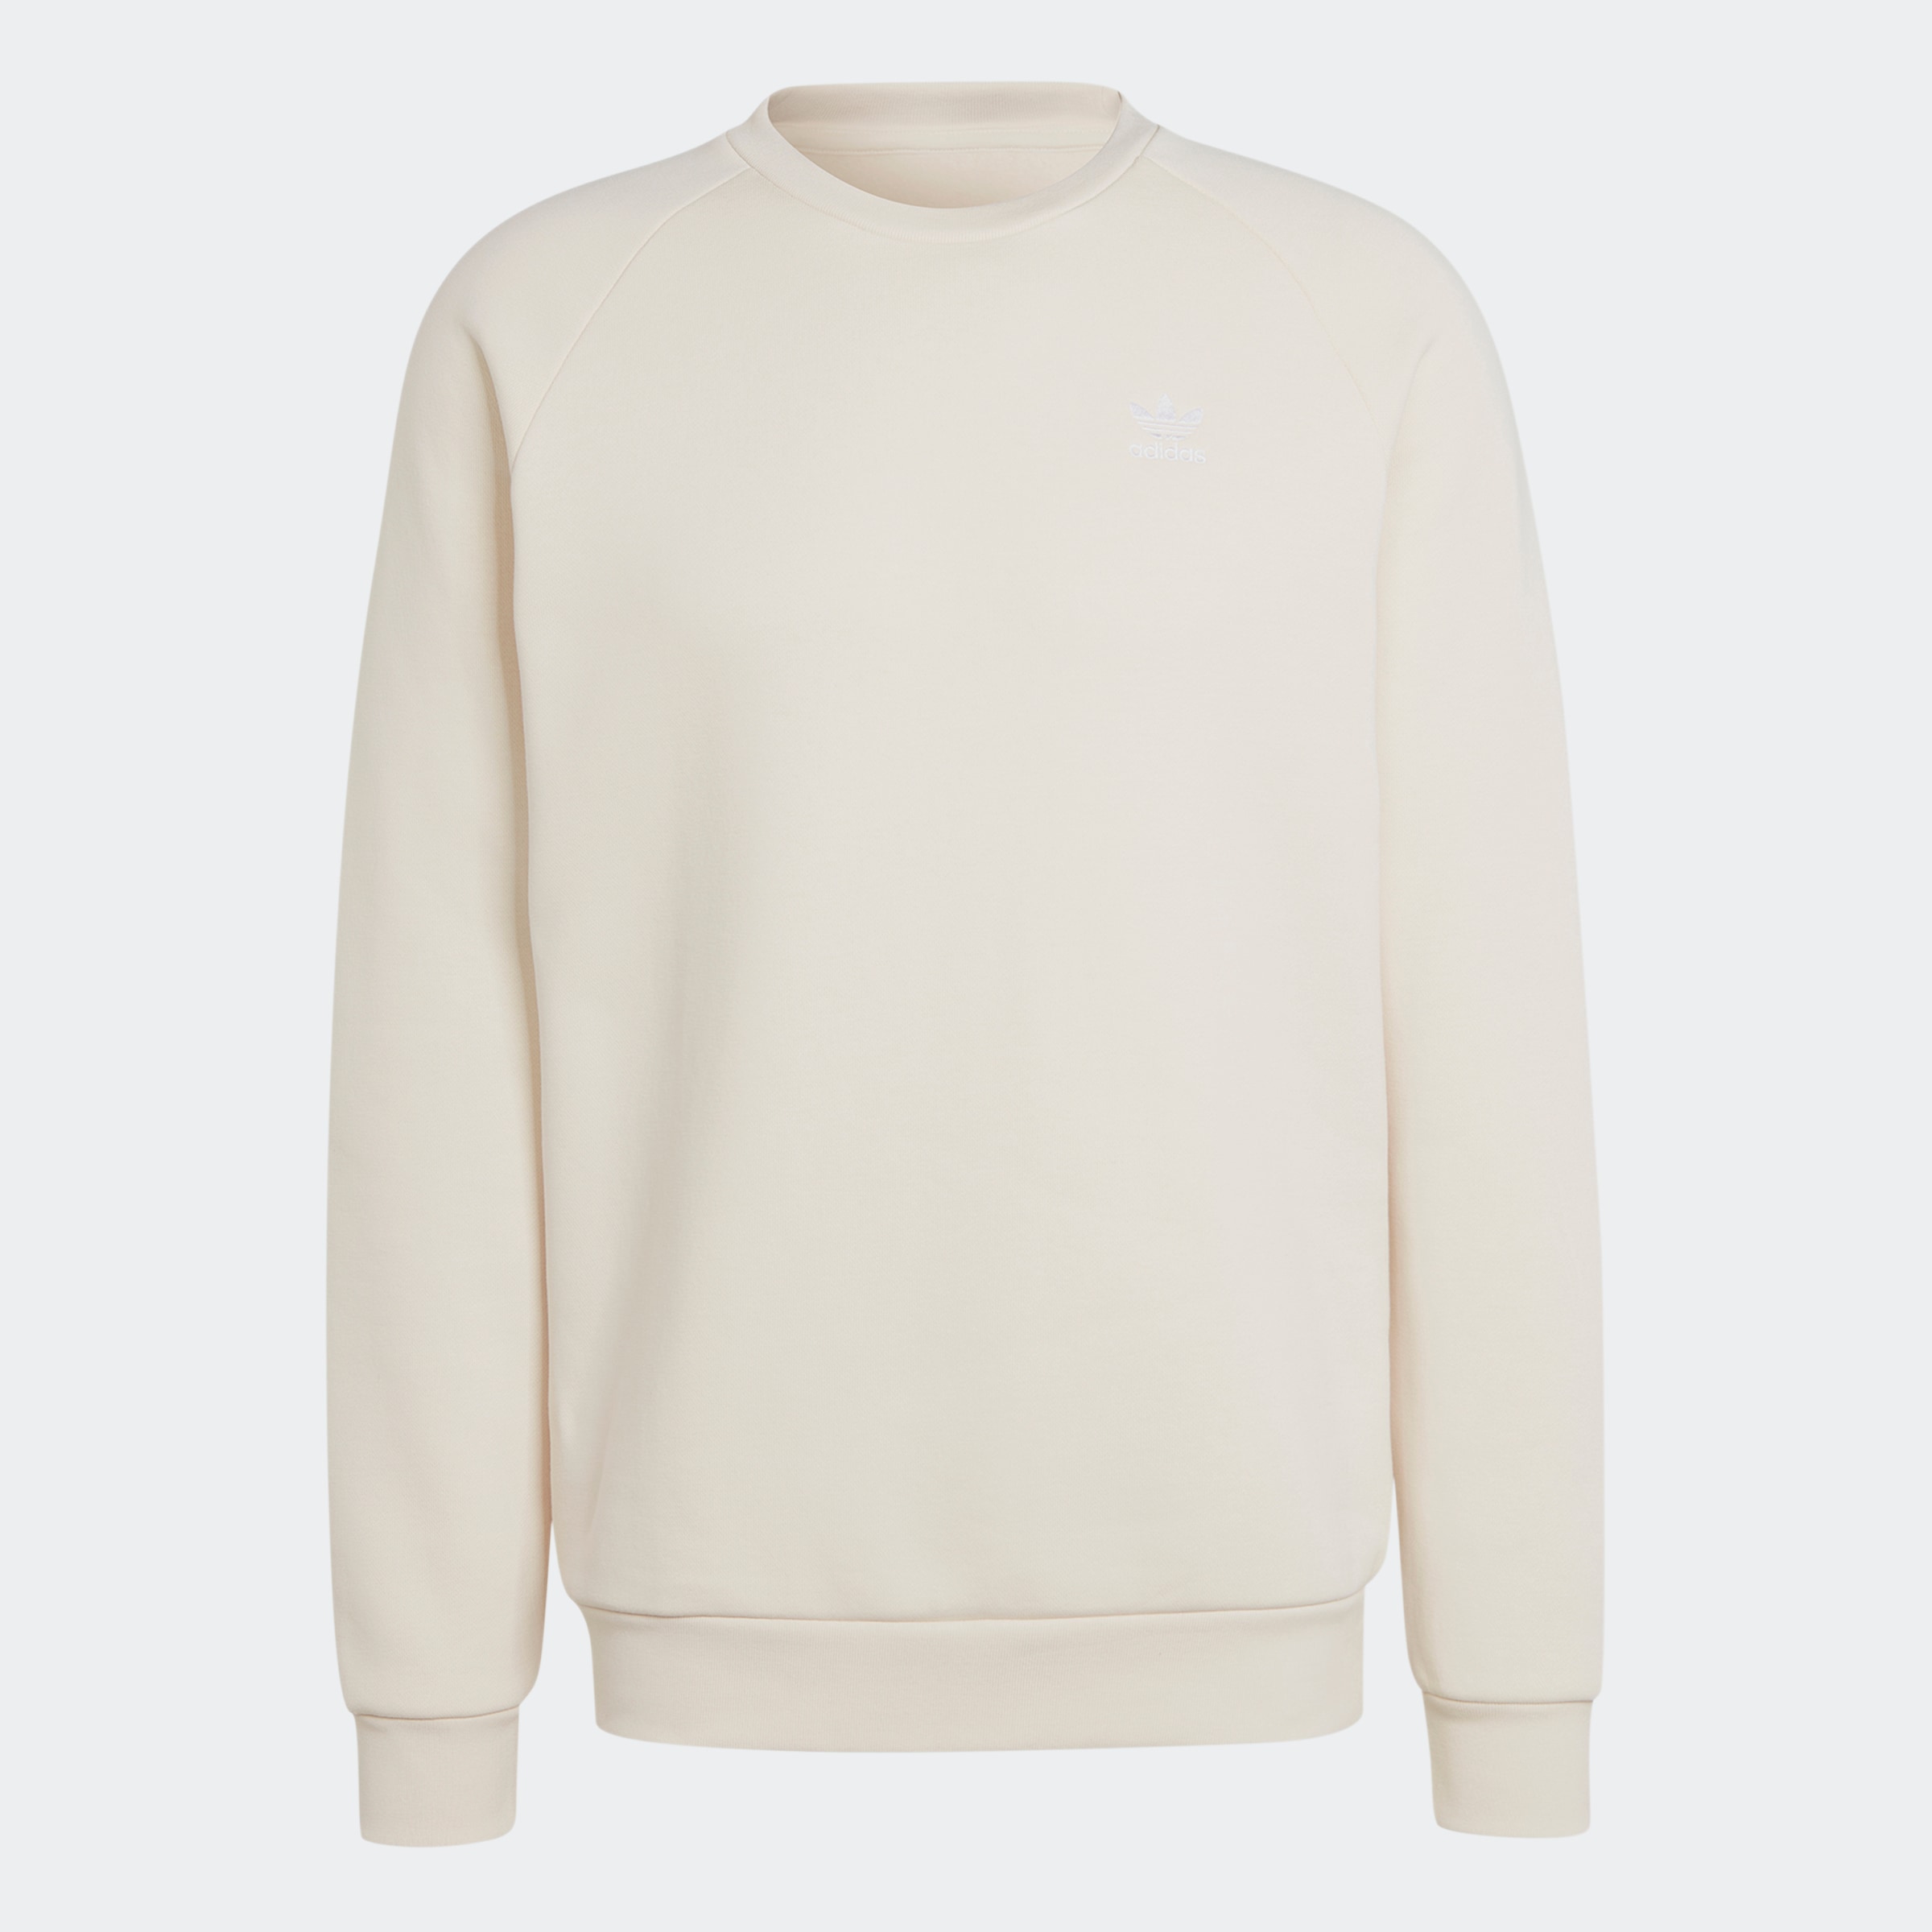 kaufen Sweatshirts ➤ Rechnung auf